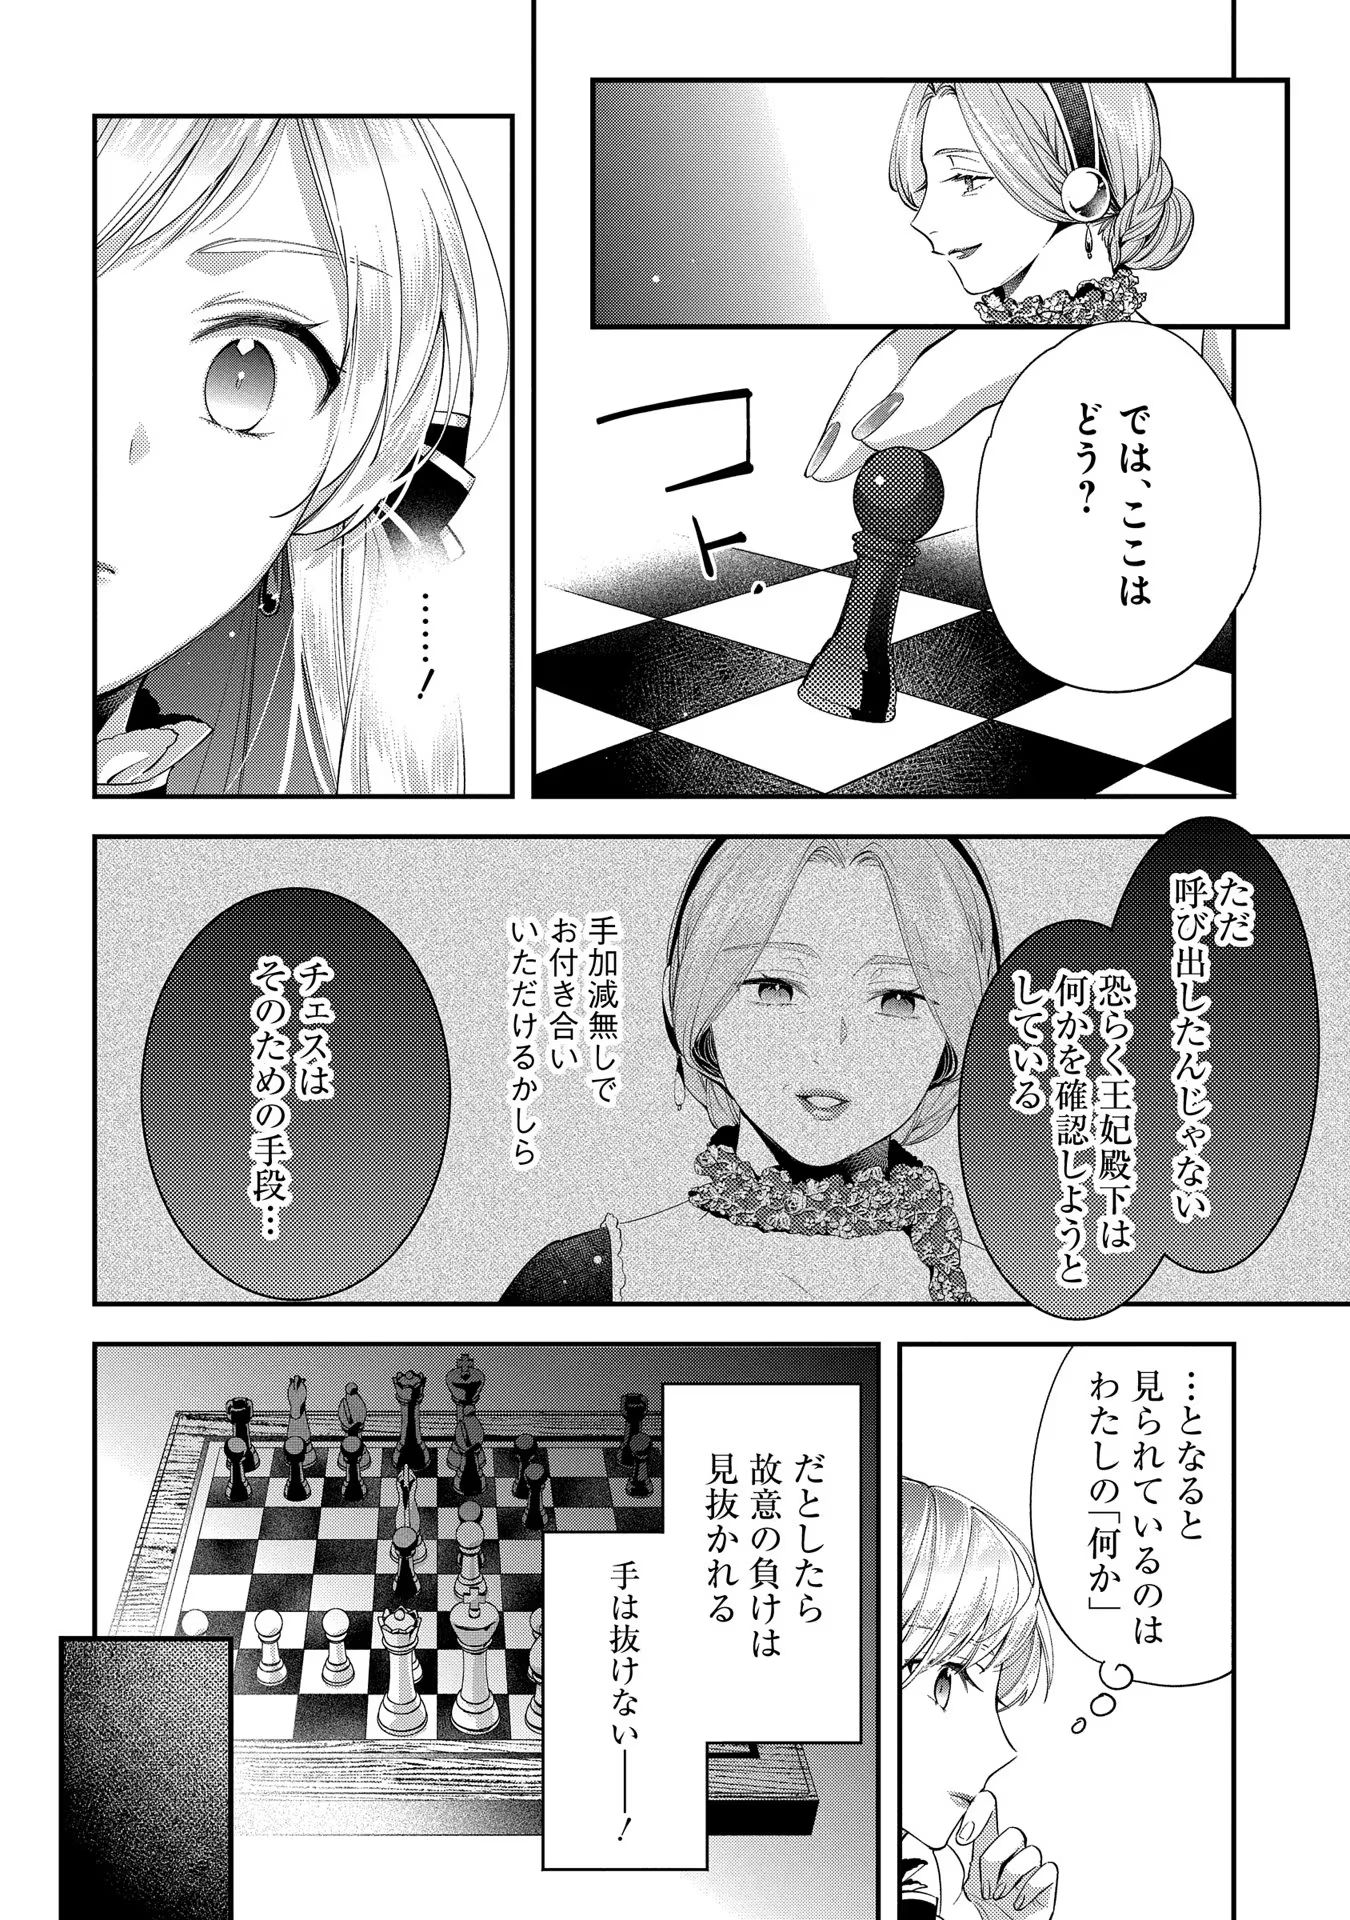 Outaishi ni Konyaku Hakisareta no de, Mou Baka no Furi wa Yameyou to Omoimasu - Chapter 6 - Page 23